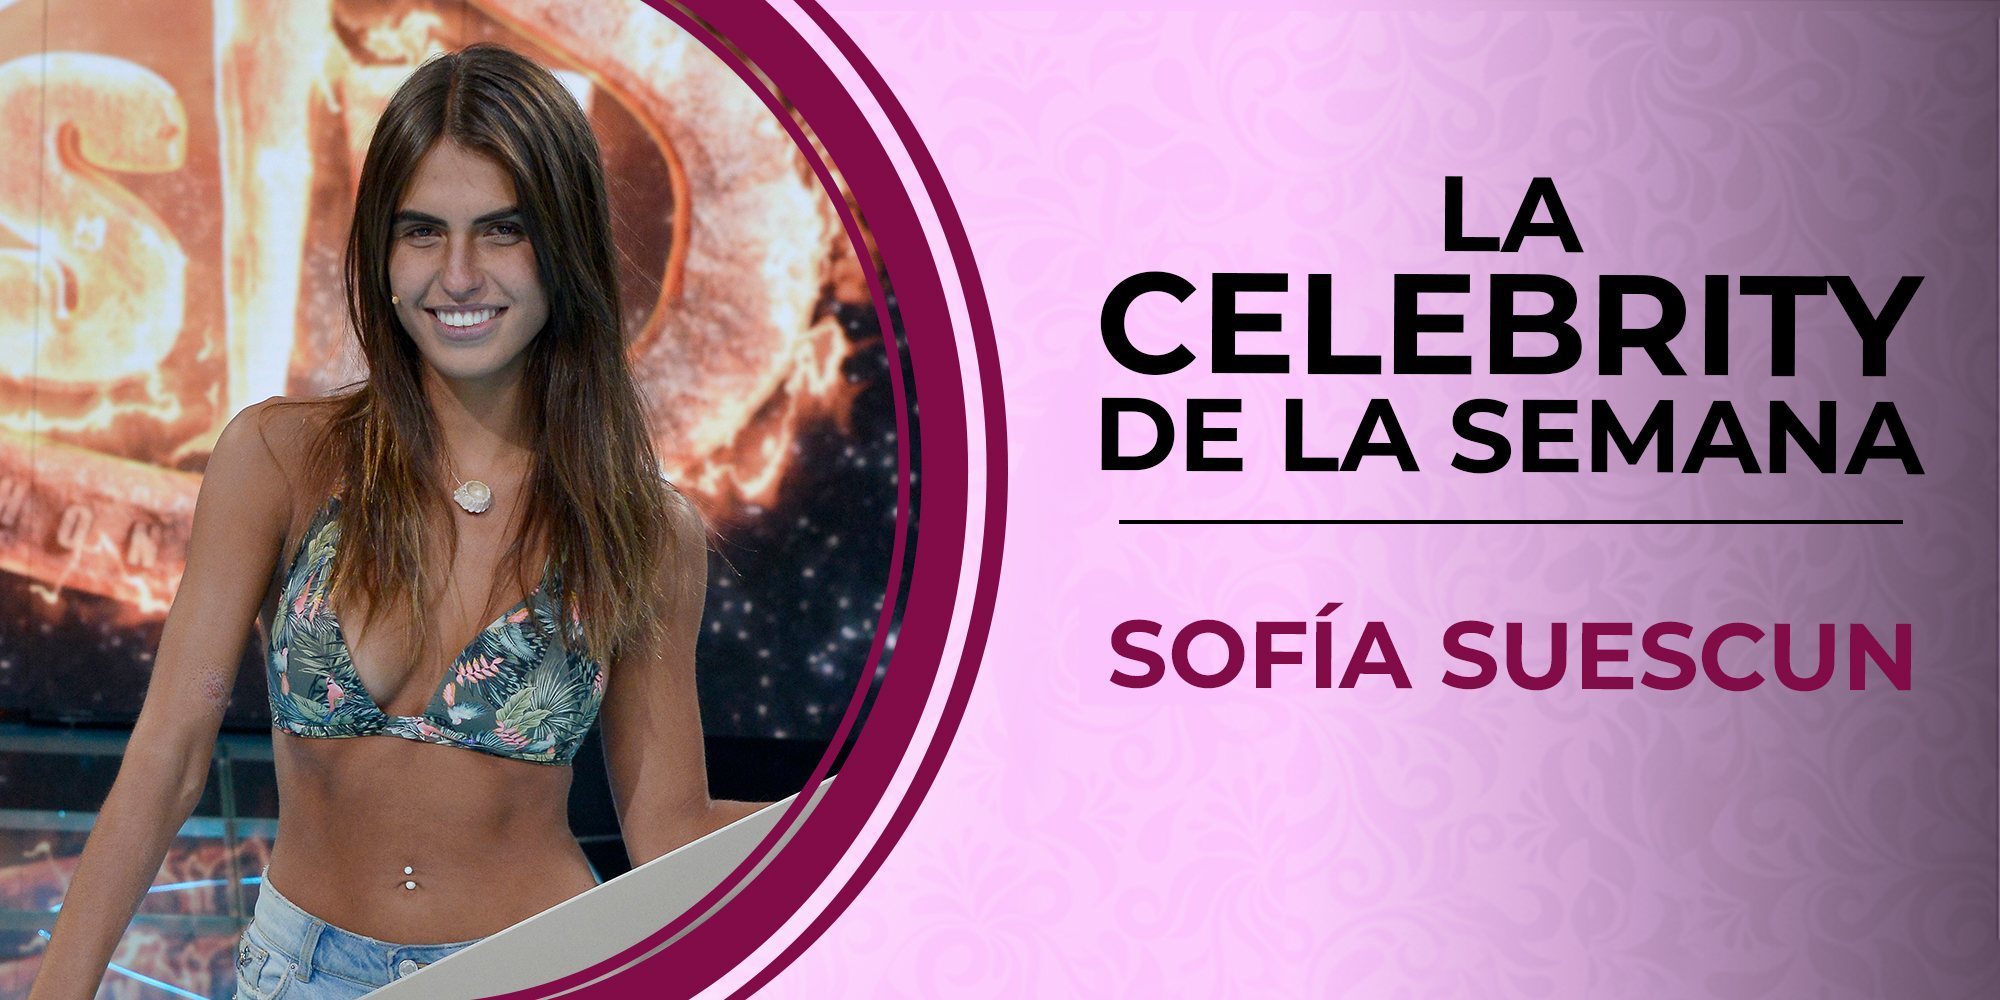 Sofía Suescun se convierte en la celebrity de la semana por su victoria en 'Supervivientes 2018'